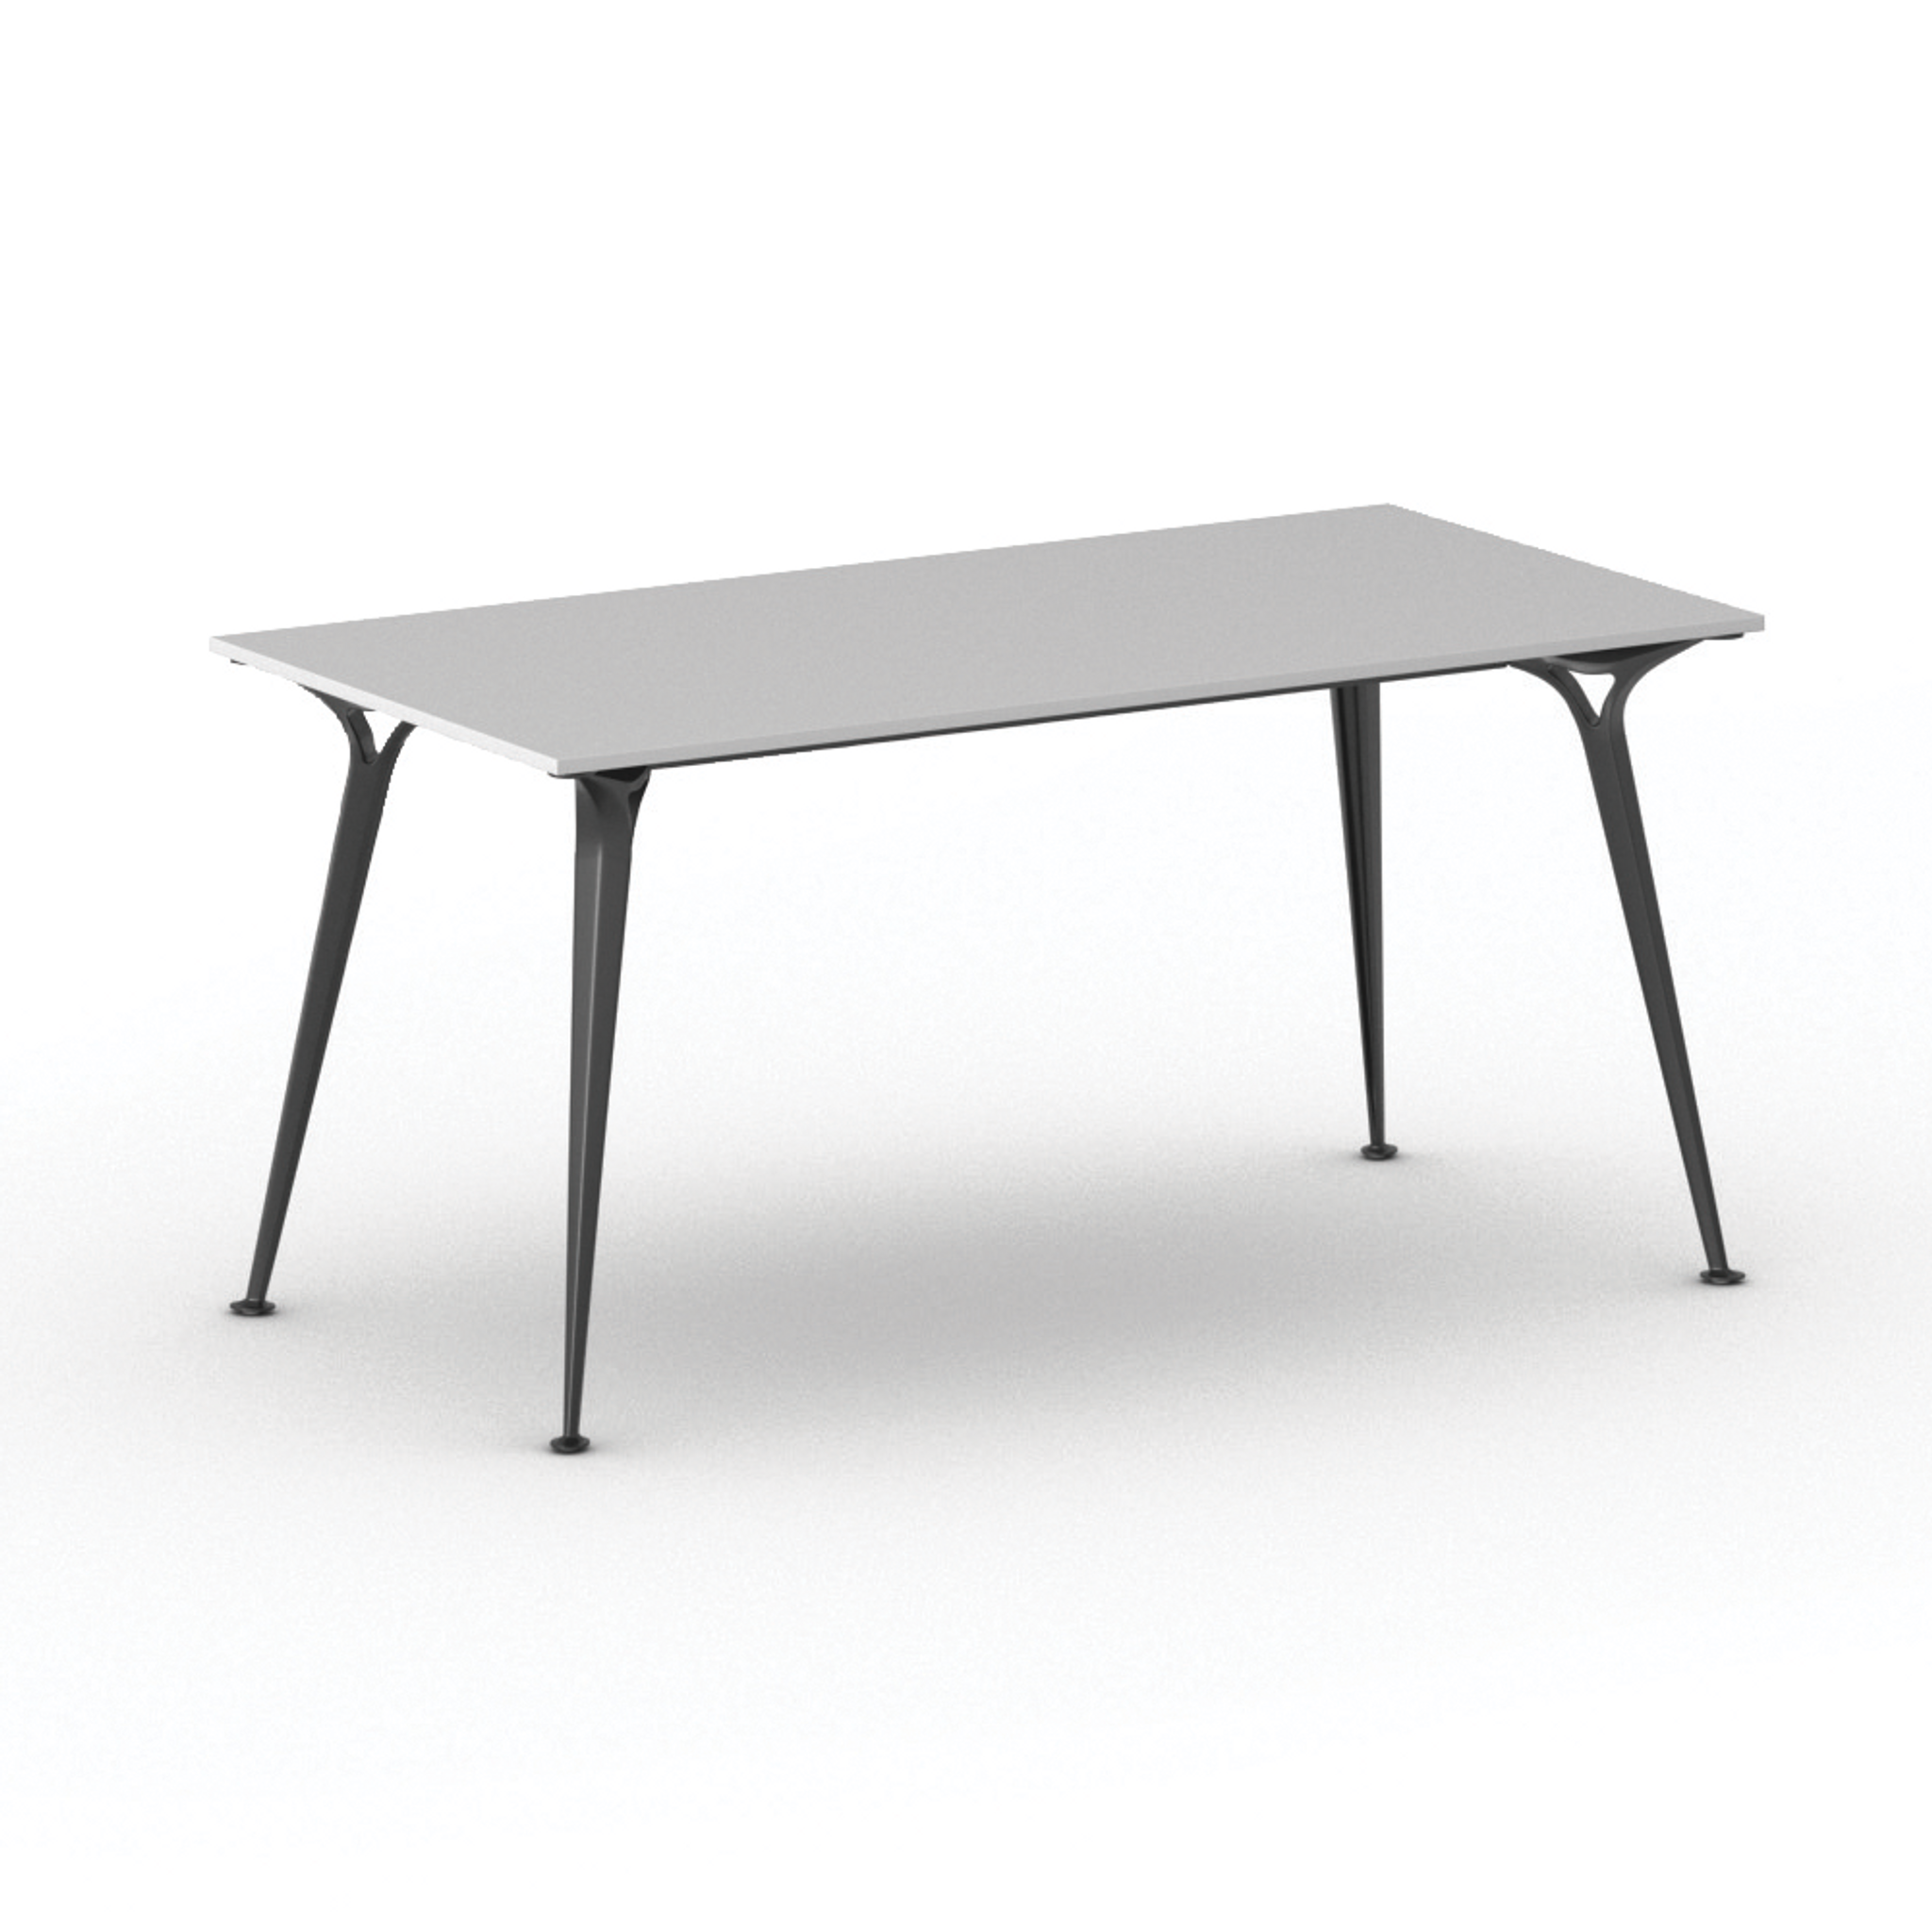 Stół PRIMO ALFA 1600 x 800 mm, szary